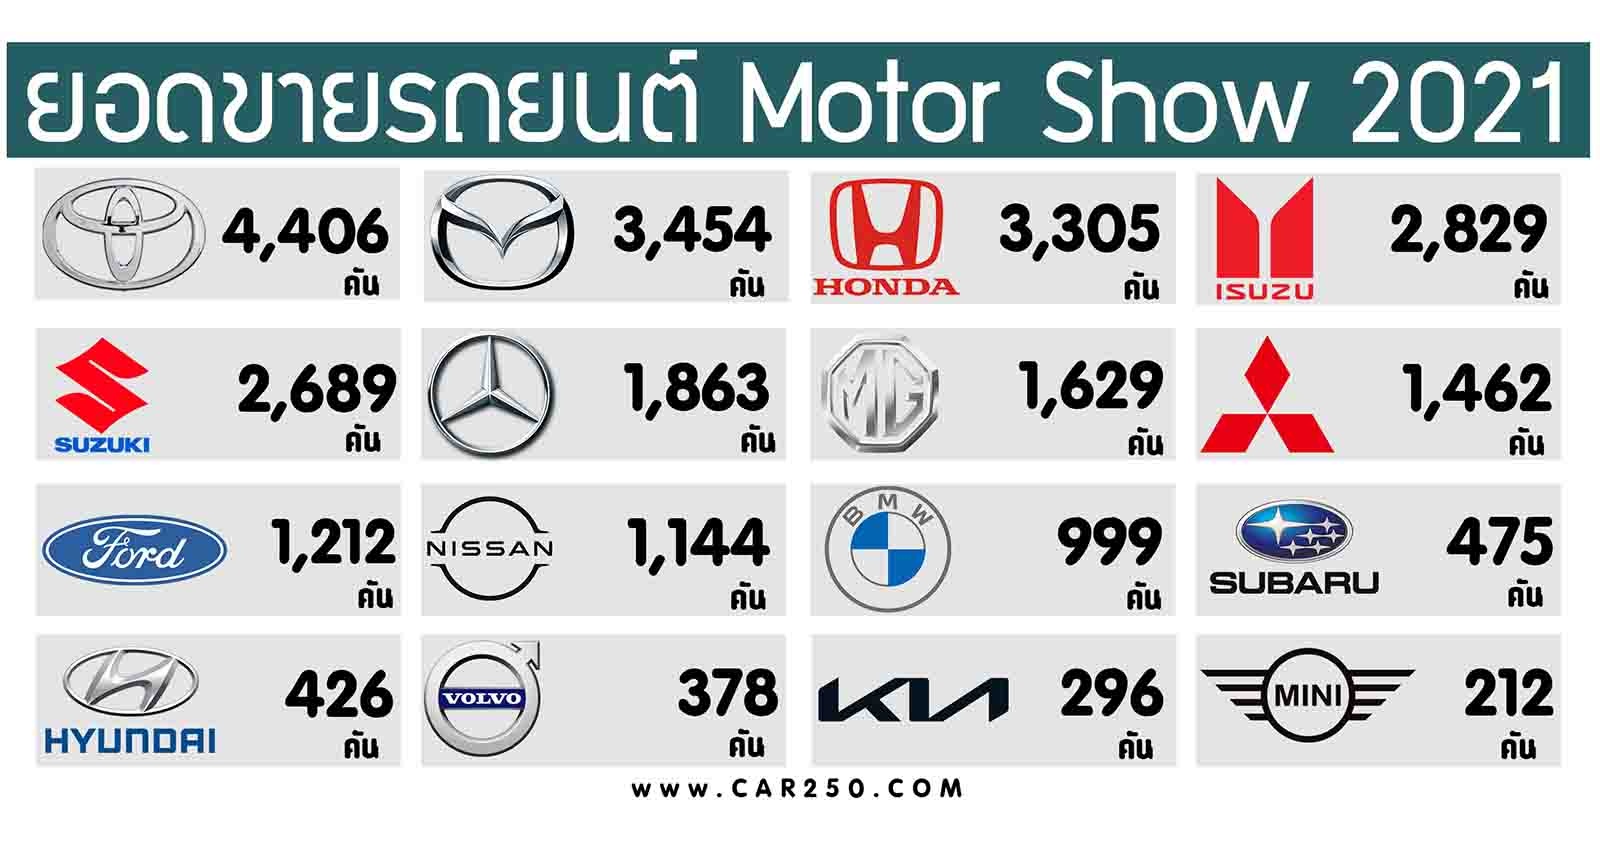 ยอดจองรถยนต์ Motor Show 2021 14 วัน รวม 27,886 คัน